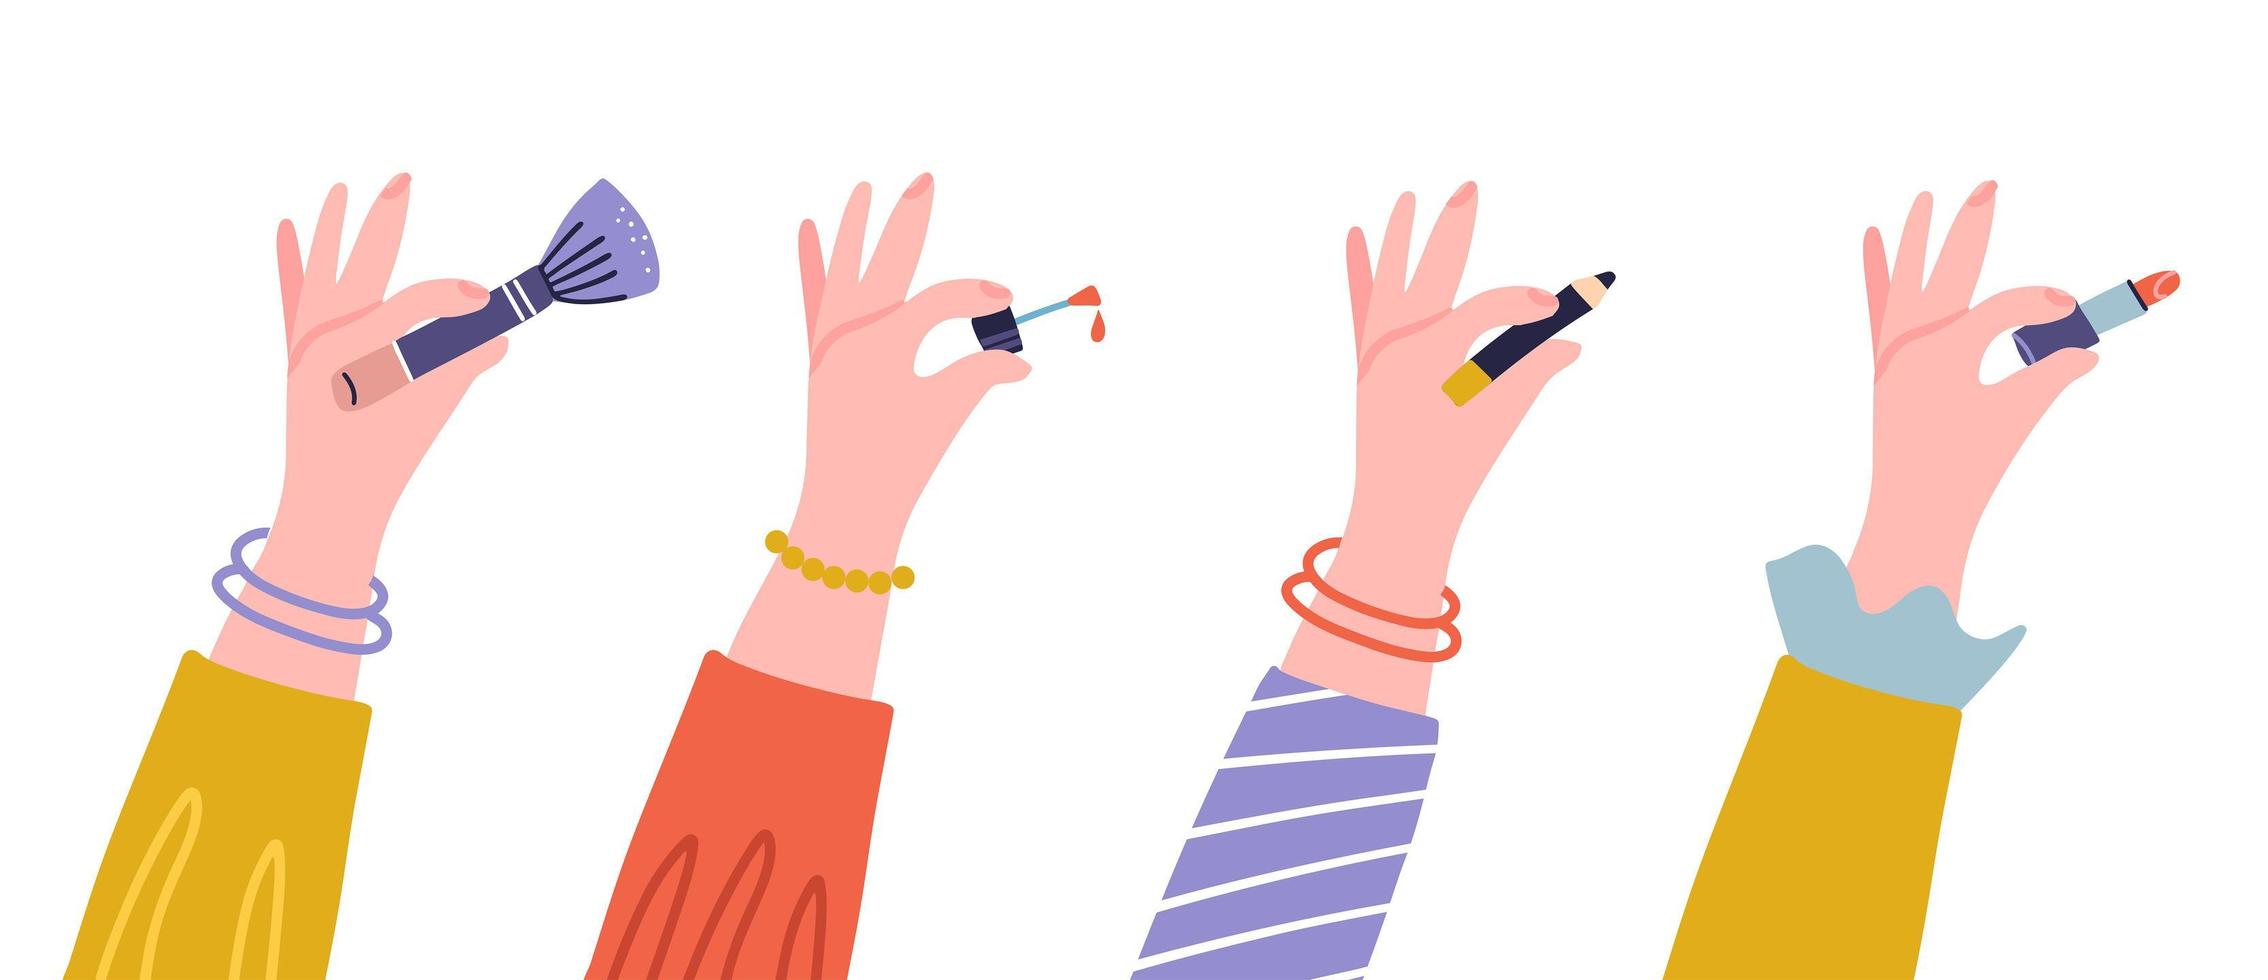 kvinnors händer med kosmetiska tillbehör - läppstift, ögonpenna, borste och nagellack. platt illustration av kvinnliga händer med kosmetiska verktyg. vektor isolerad på vit bakgrund designelement.